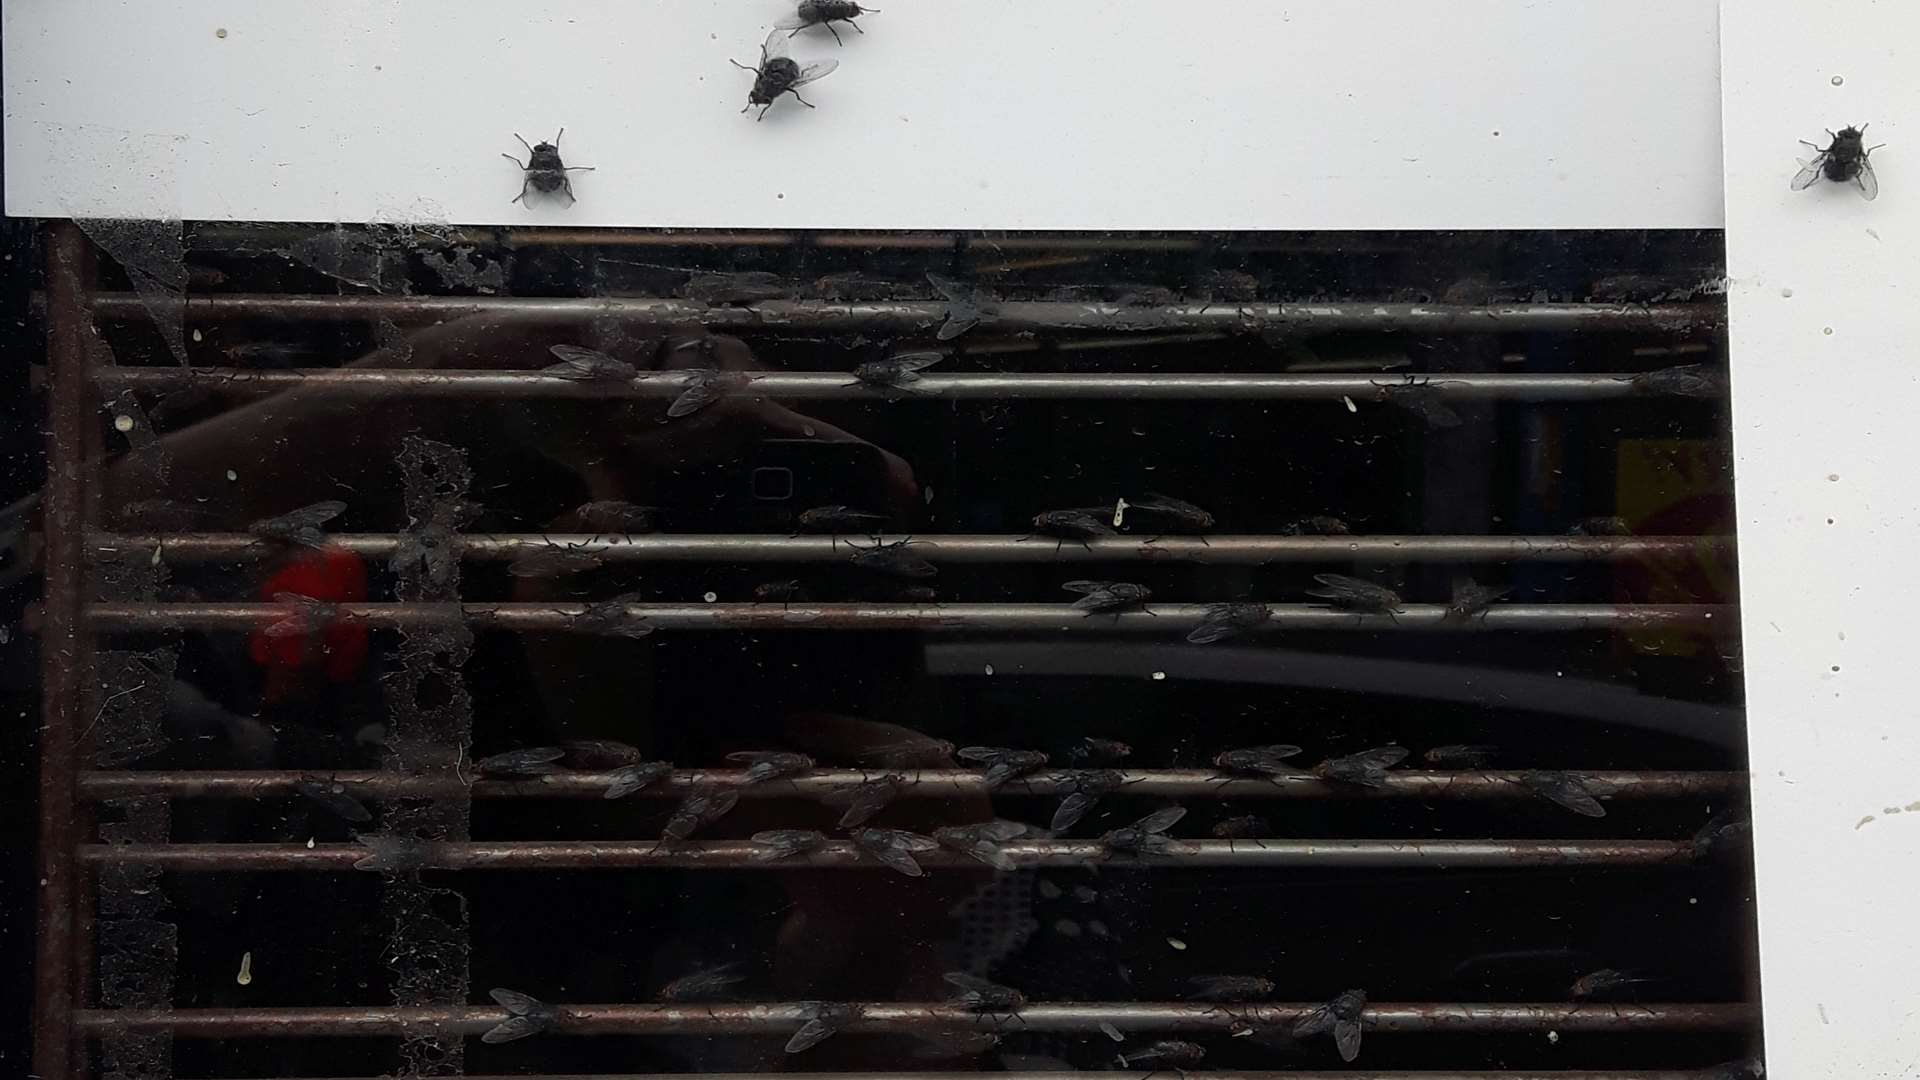 A swarm of flies can be seen inside the shop door.